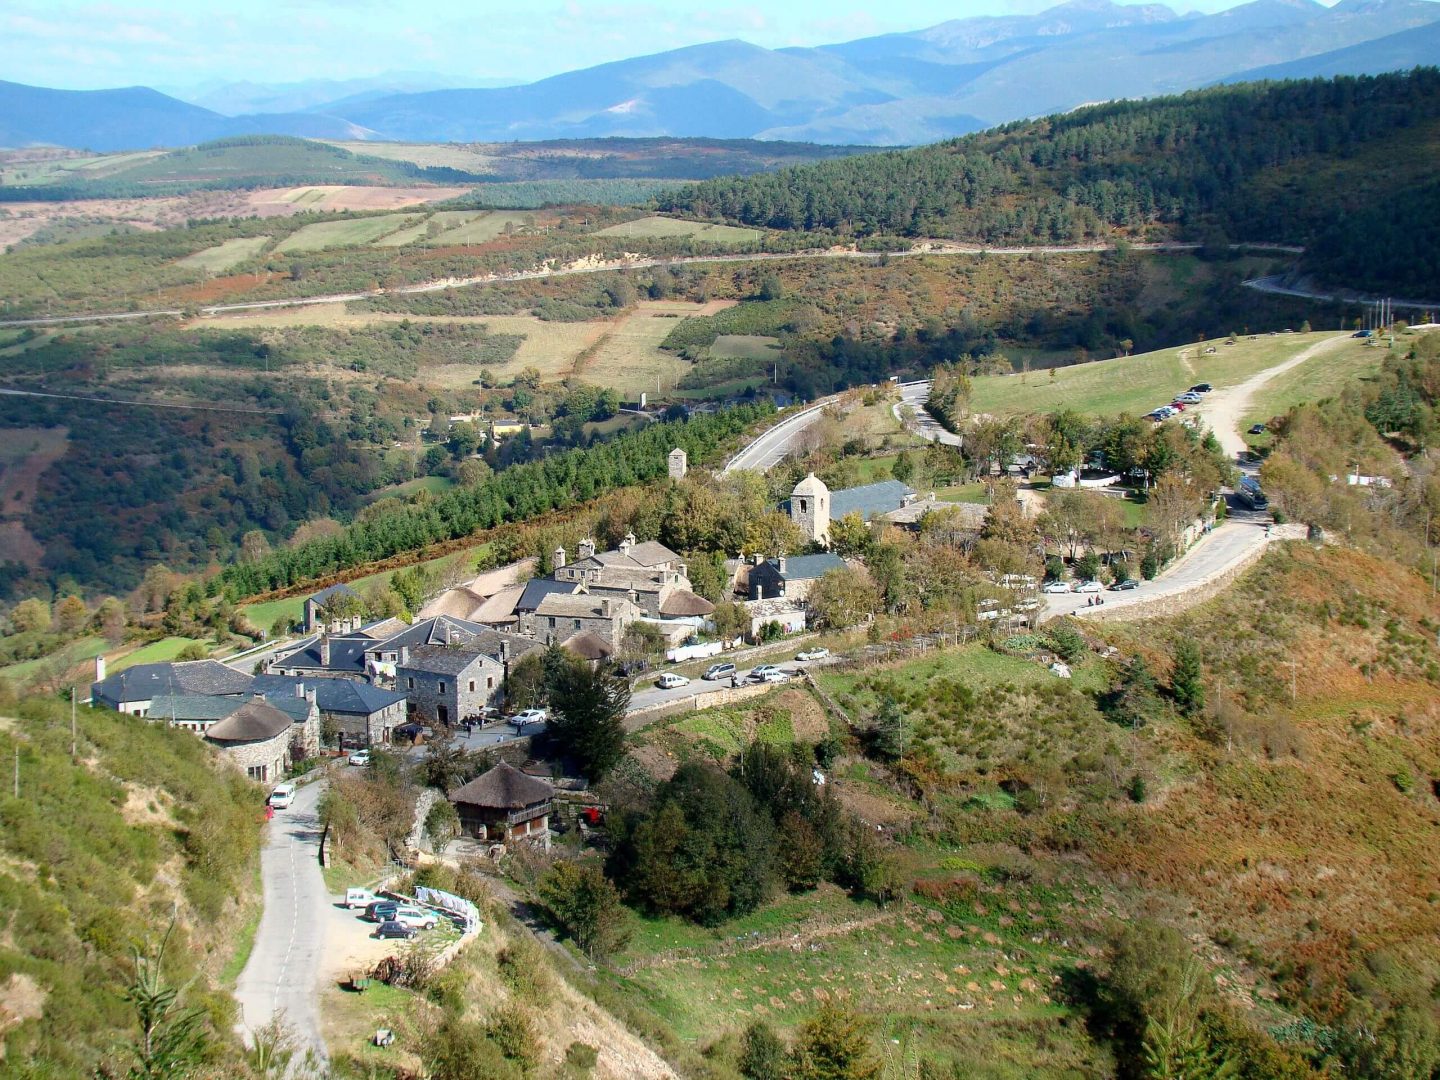 La aldea de Pedrafita do Cebreiro (Lugo) conserva algunas pallozas—casas circulares de origen prerromano.